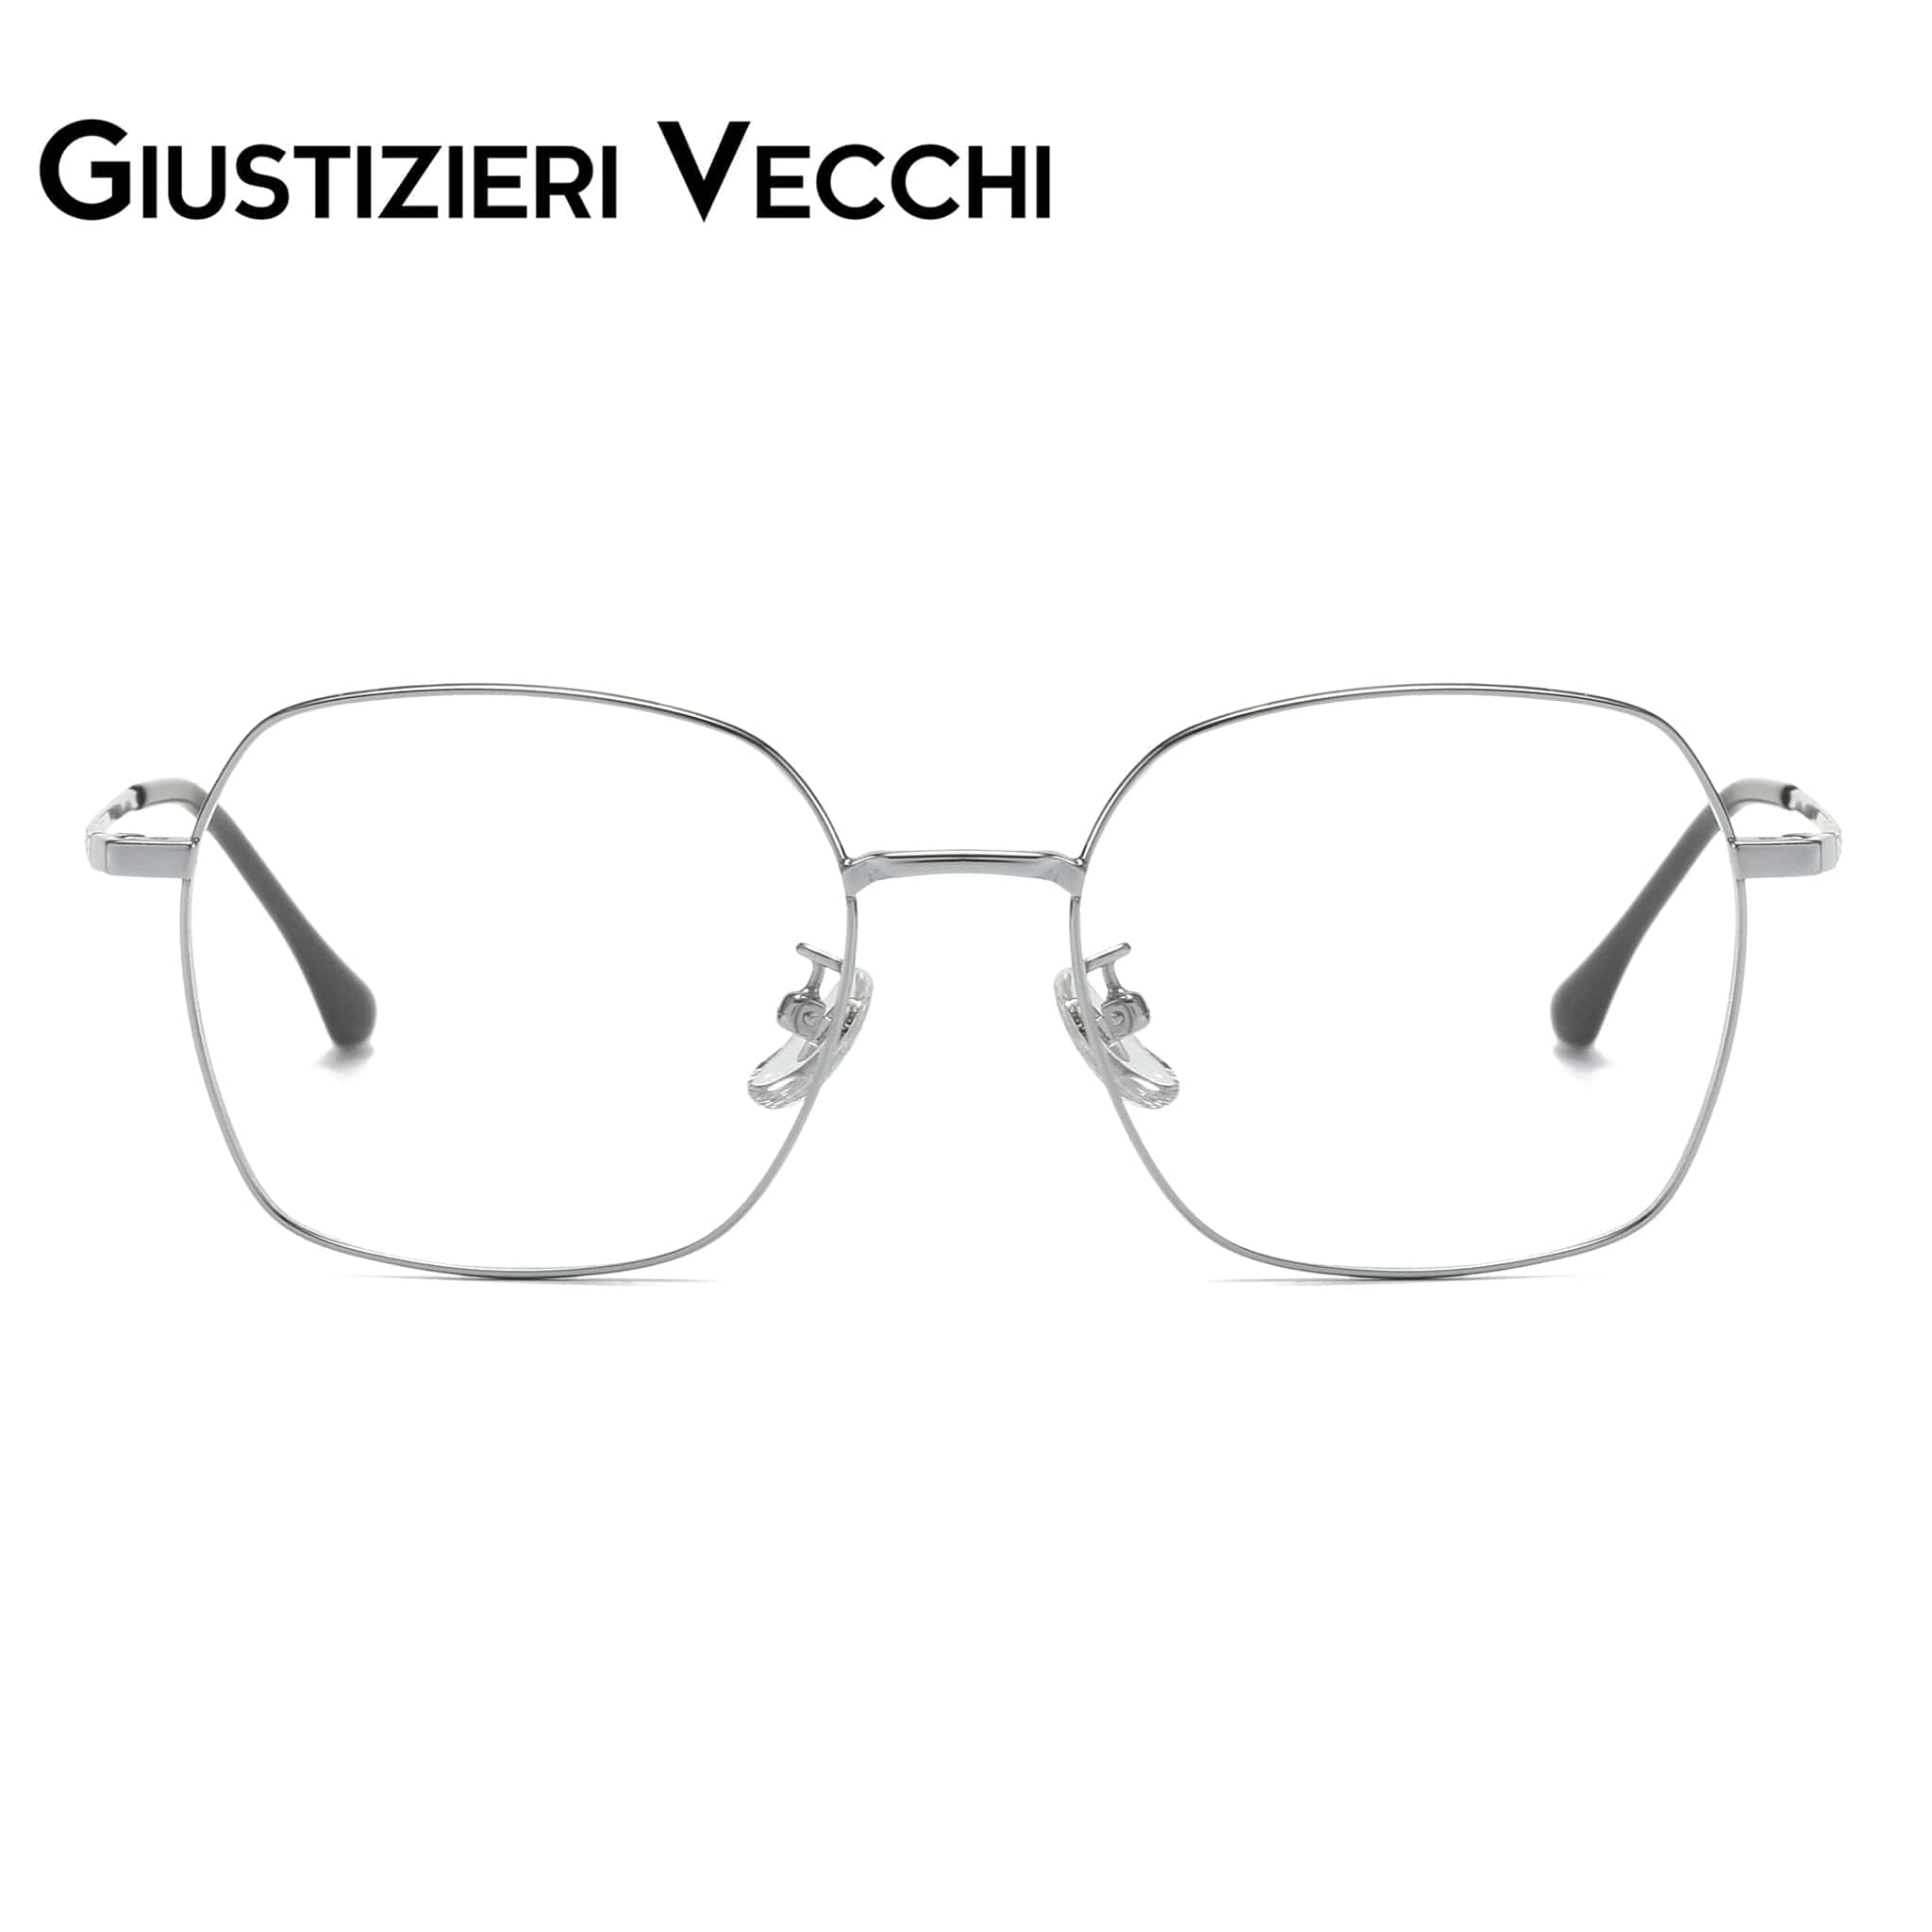 GIUSTIZIERI VECCHI Eyeglasses Small / Silver Chill Mist Duo